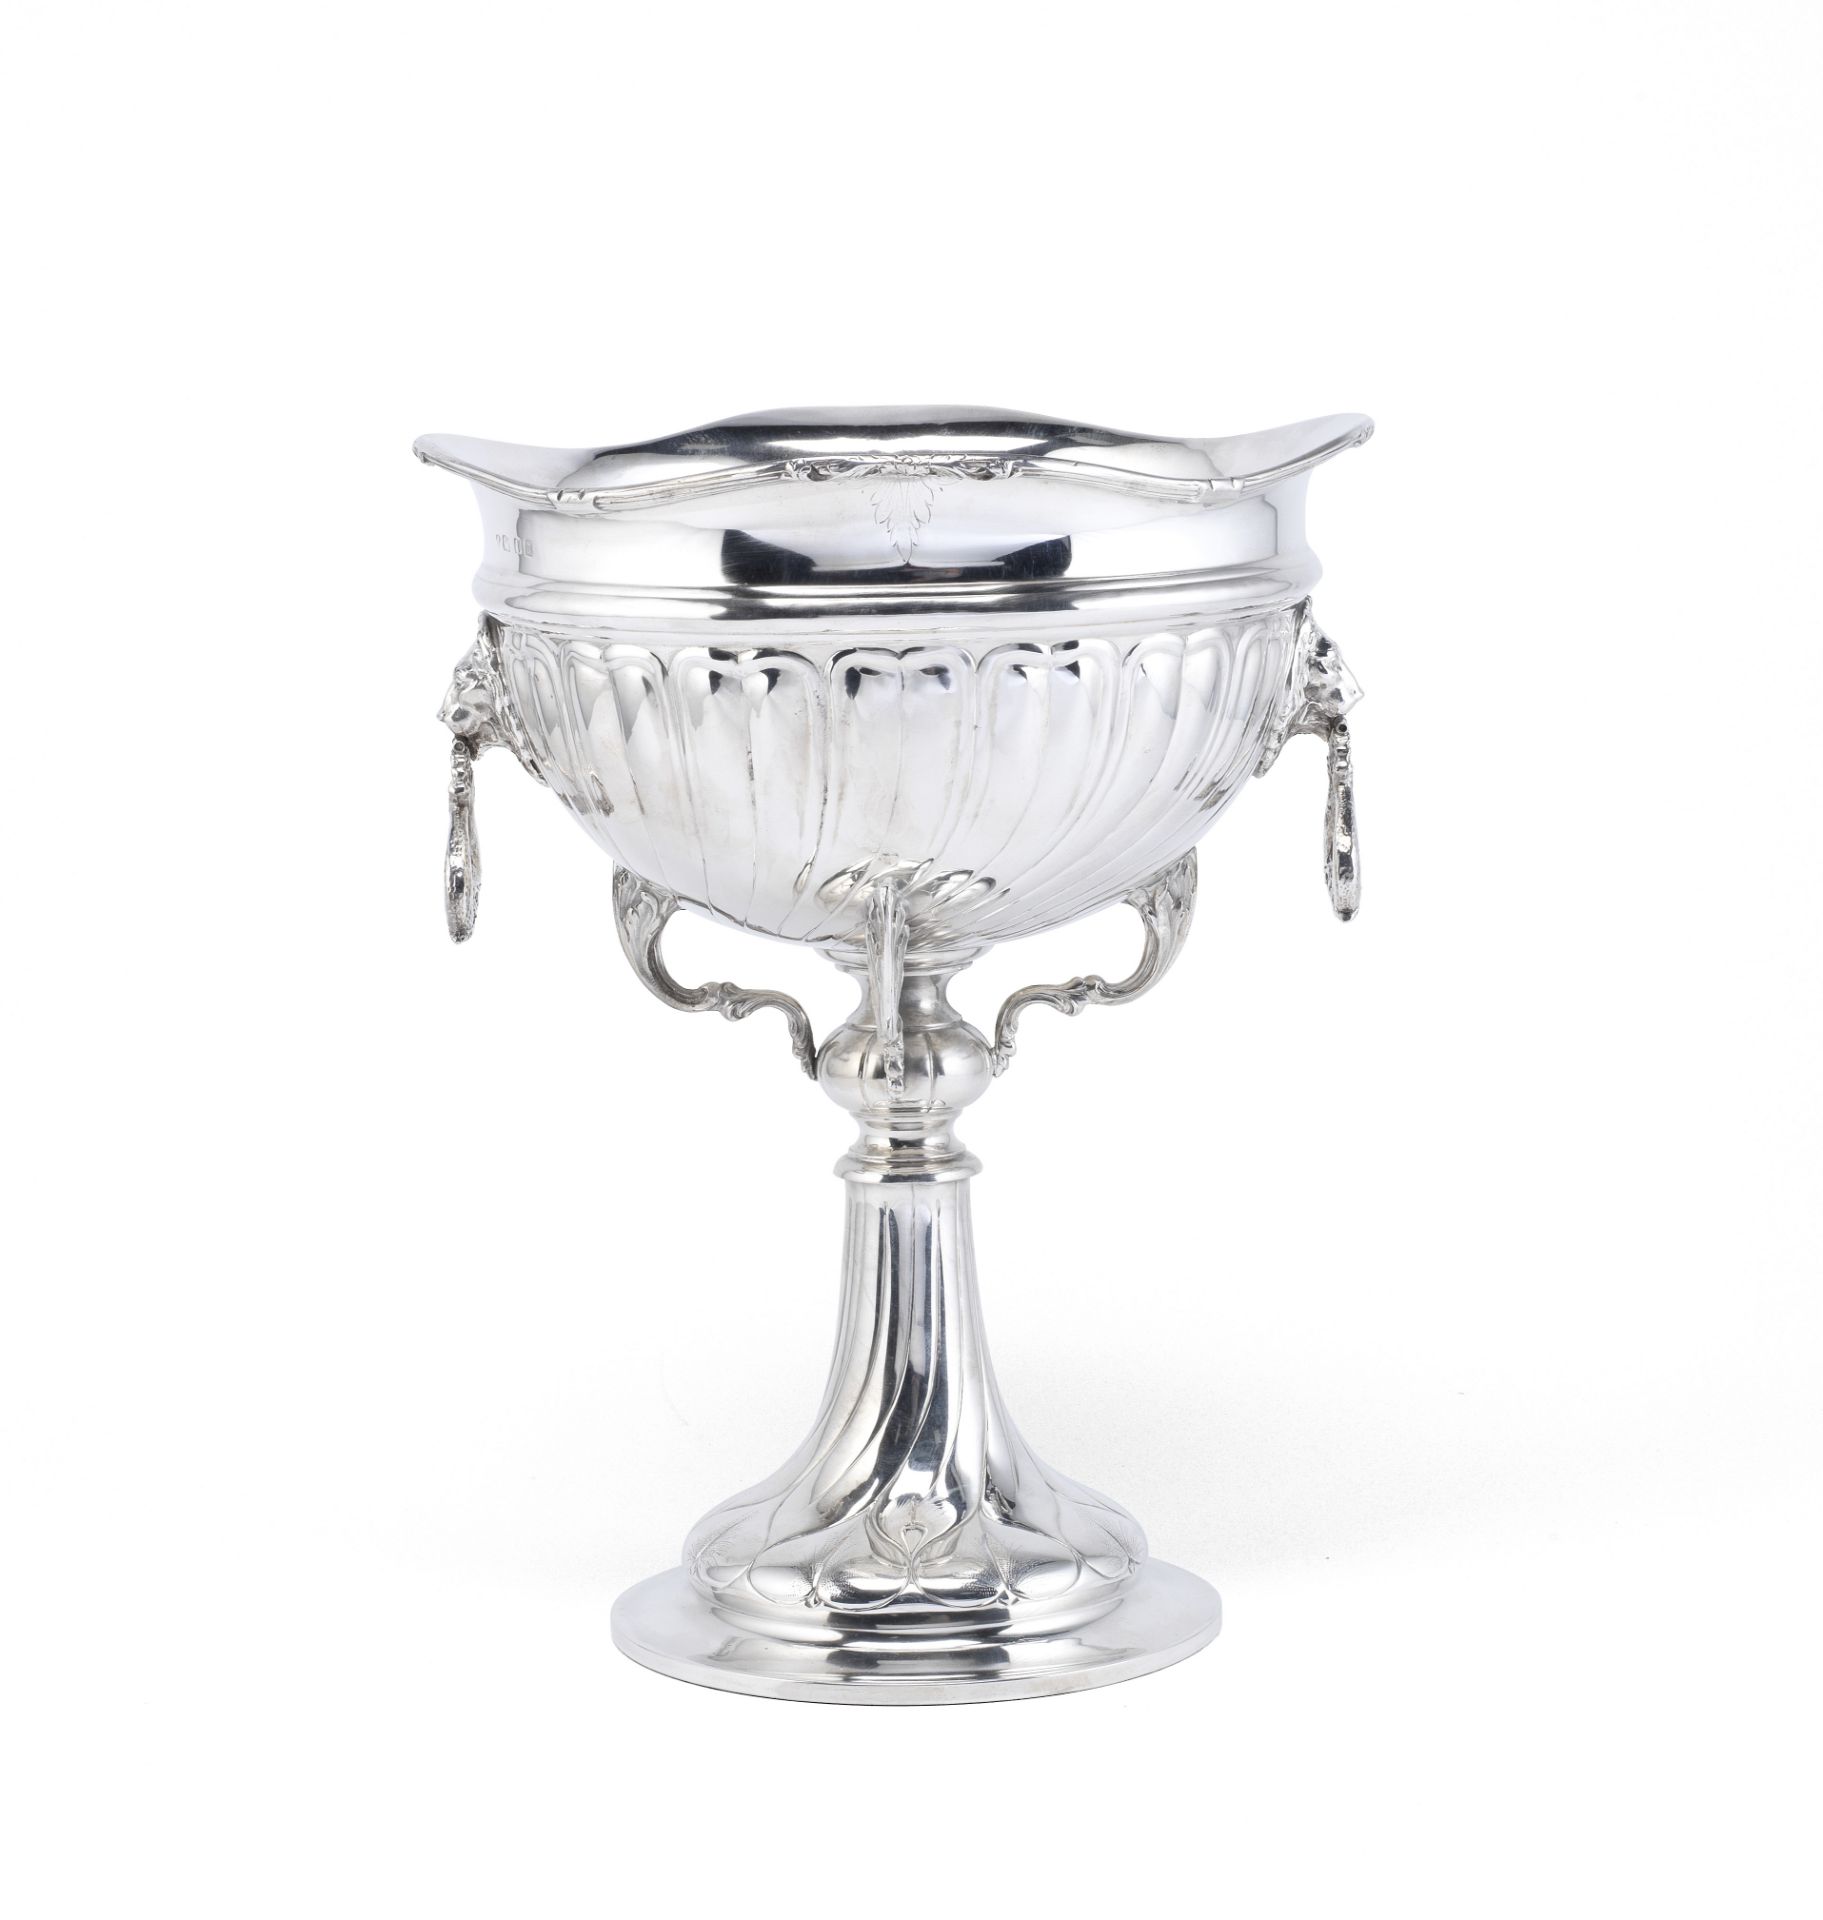 A large silver standing bowl Charles Boyton & Son Ltd, London 1929